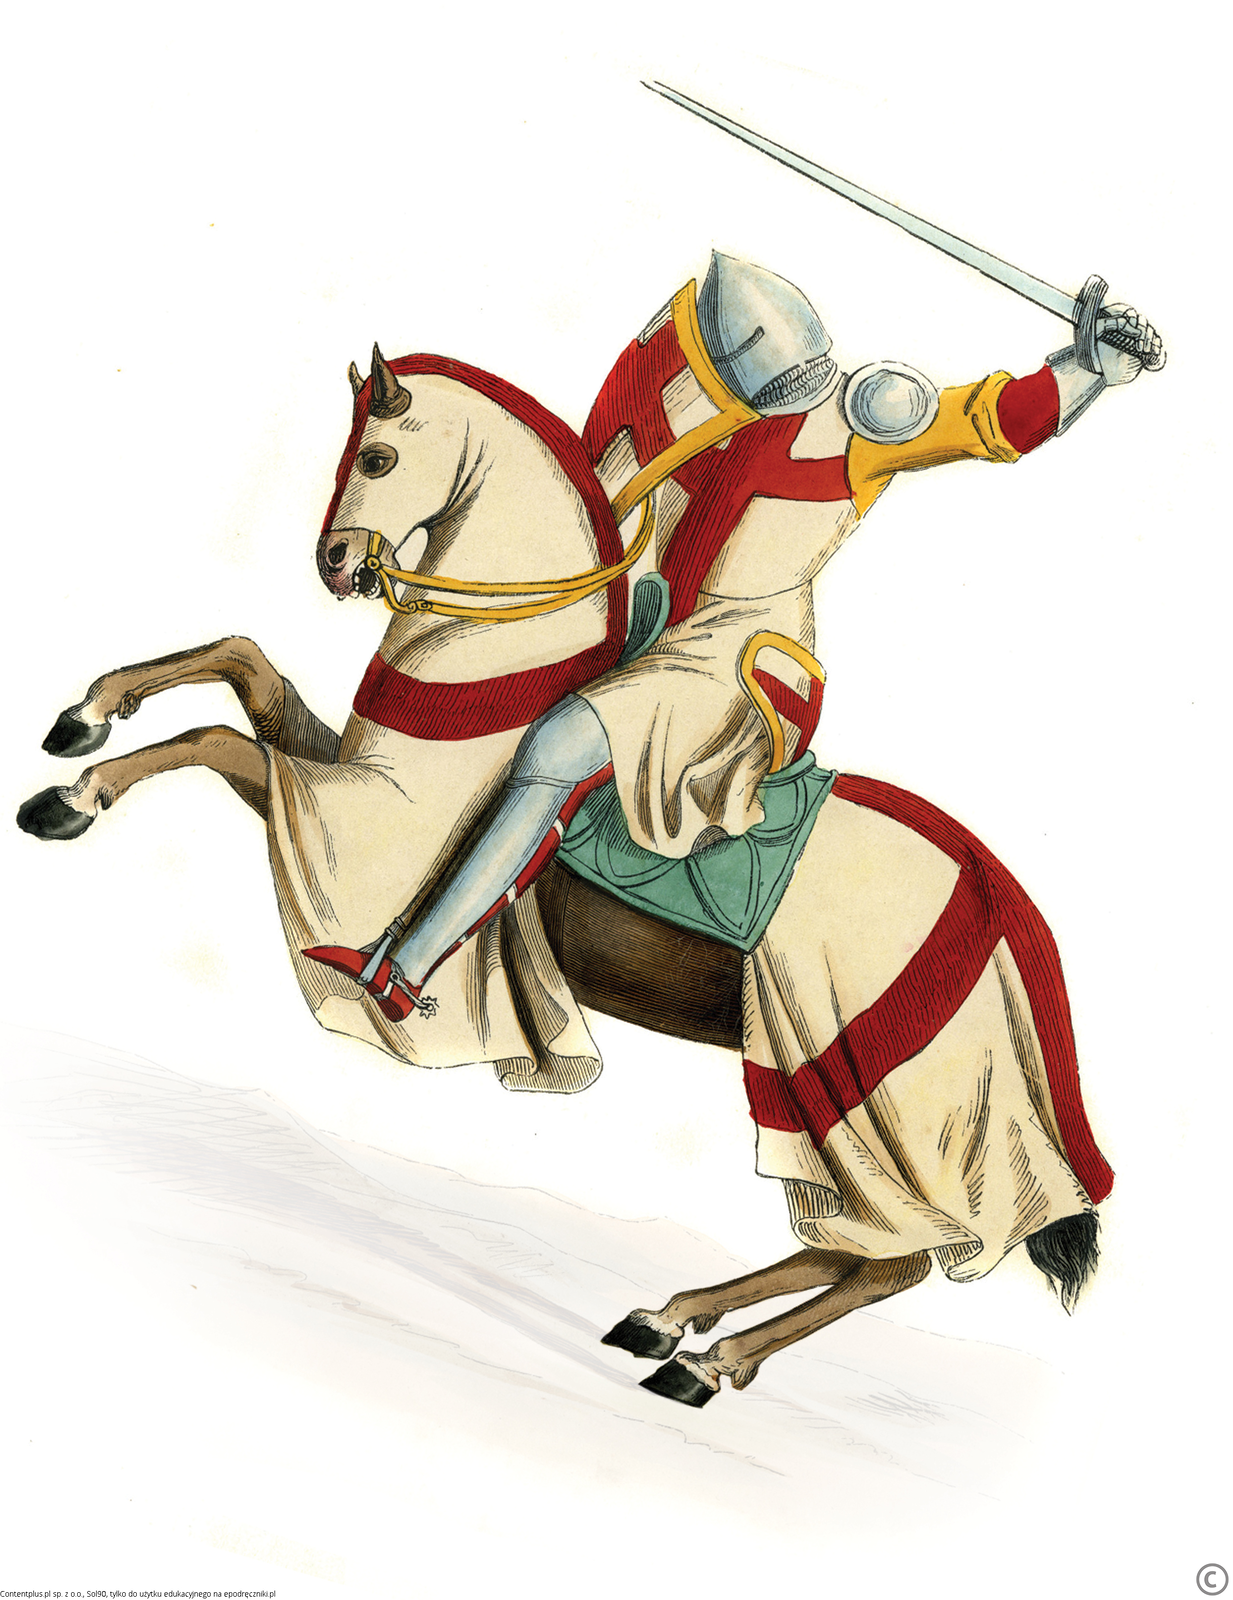 Ilustracja przedstawia rycerza na koniu. Rycerz ubrany jest w zbroję i habit. Zarówno na habicie jak i na tarczy widnieje czerwony krzyż. Rycerz unosi rękę z mieczem nad głową. Koń ma poderwane z ziemi przednie kopyta i staje dęba. 